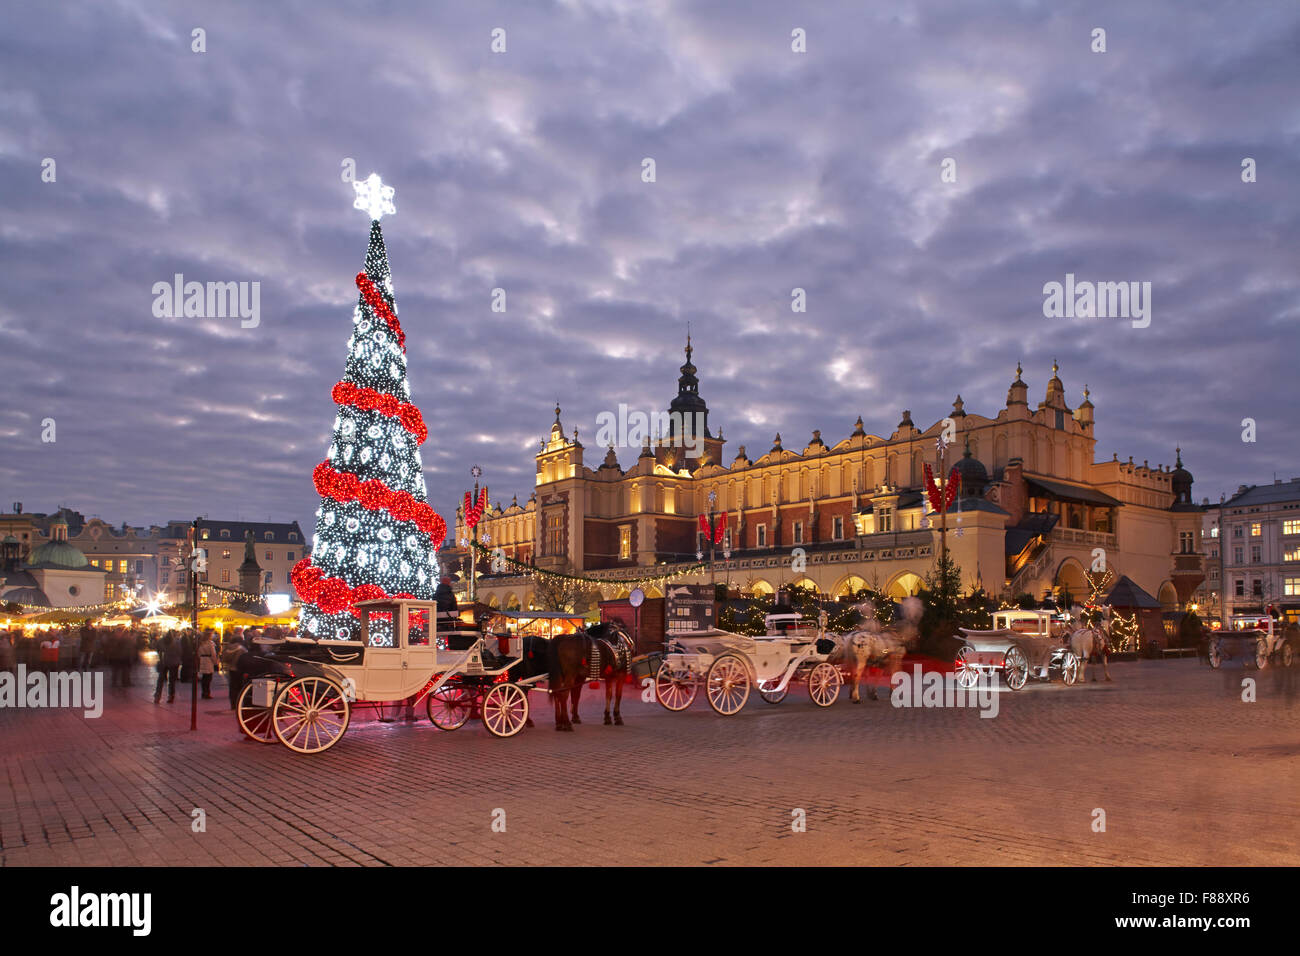 Polonia Cracovia principale Piazza Rynek Glowny panno Hall Mercatino di Natale di notte Foto Stock